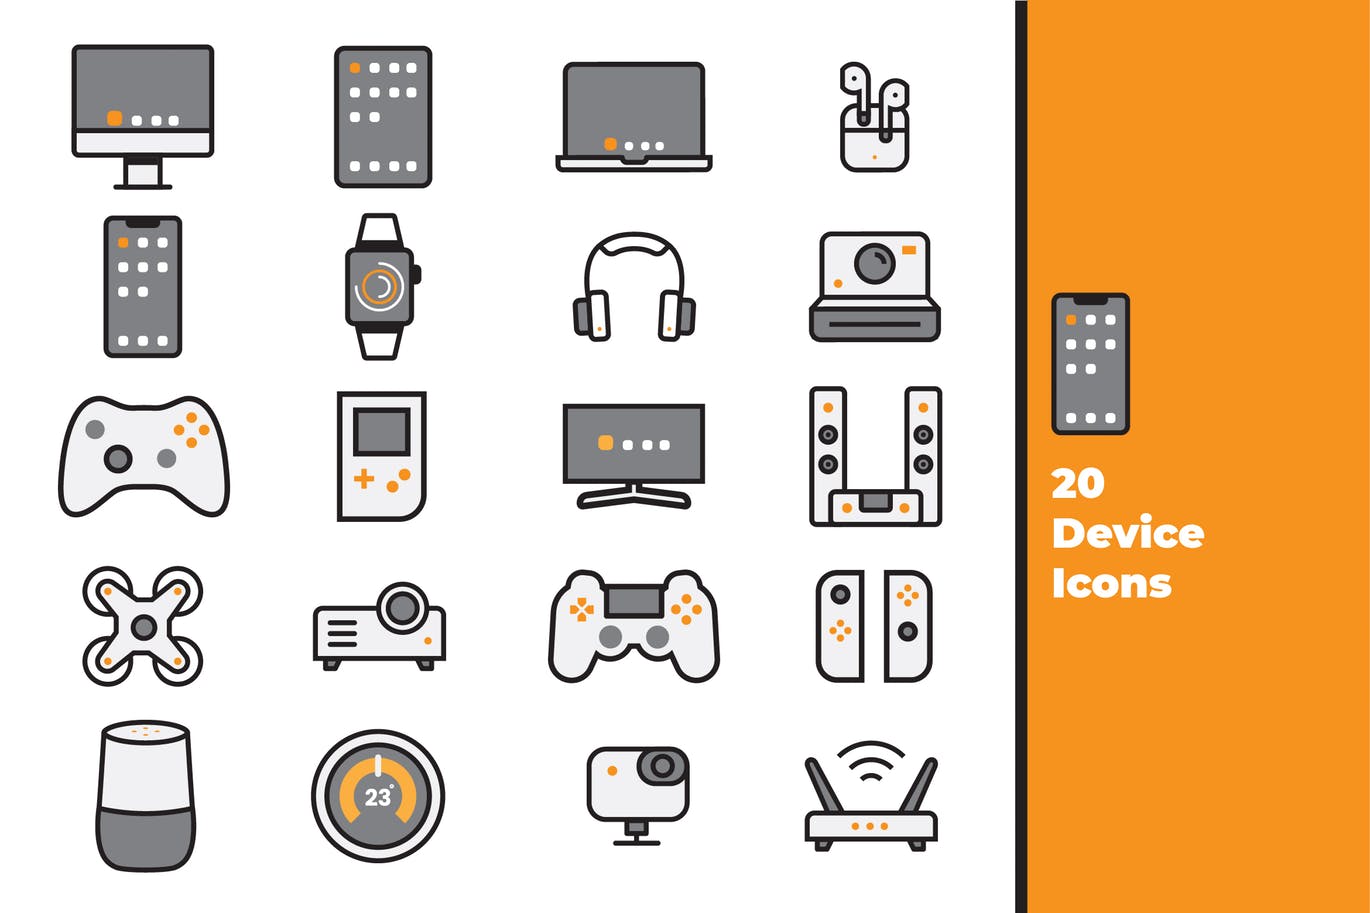 20种电子设备矢量蚂蚁素材精选图标素材 Device Icons插图